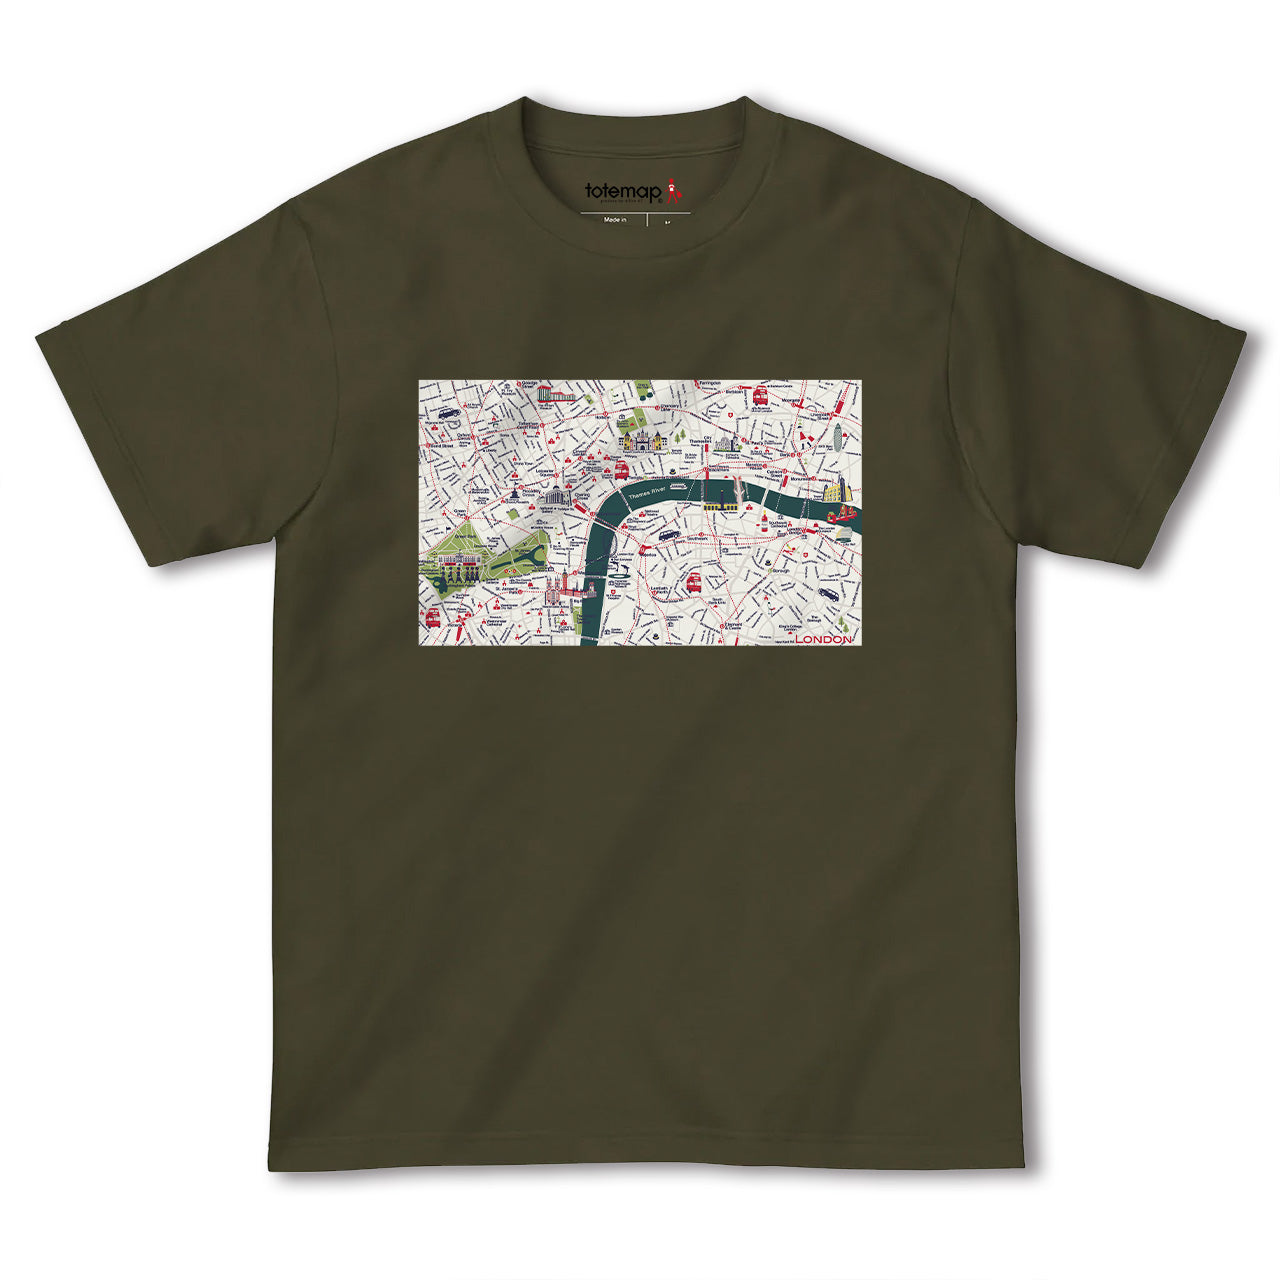 『ロンドン2（London2）海外地図』半袖Tシャツ【送料無料】